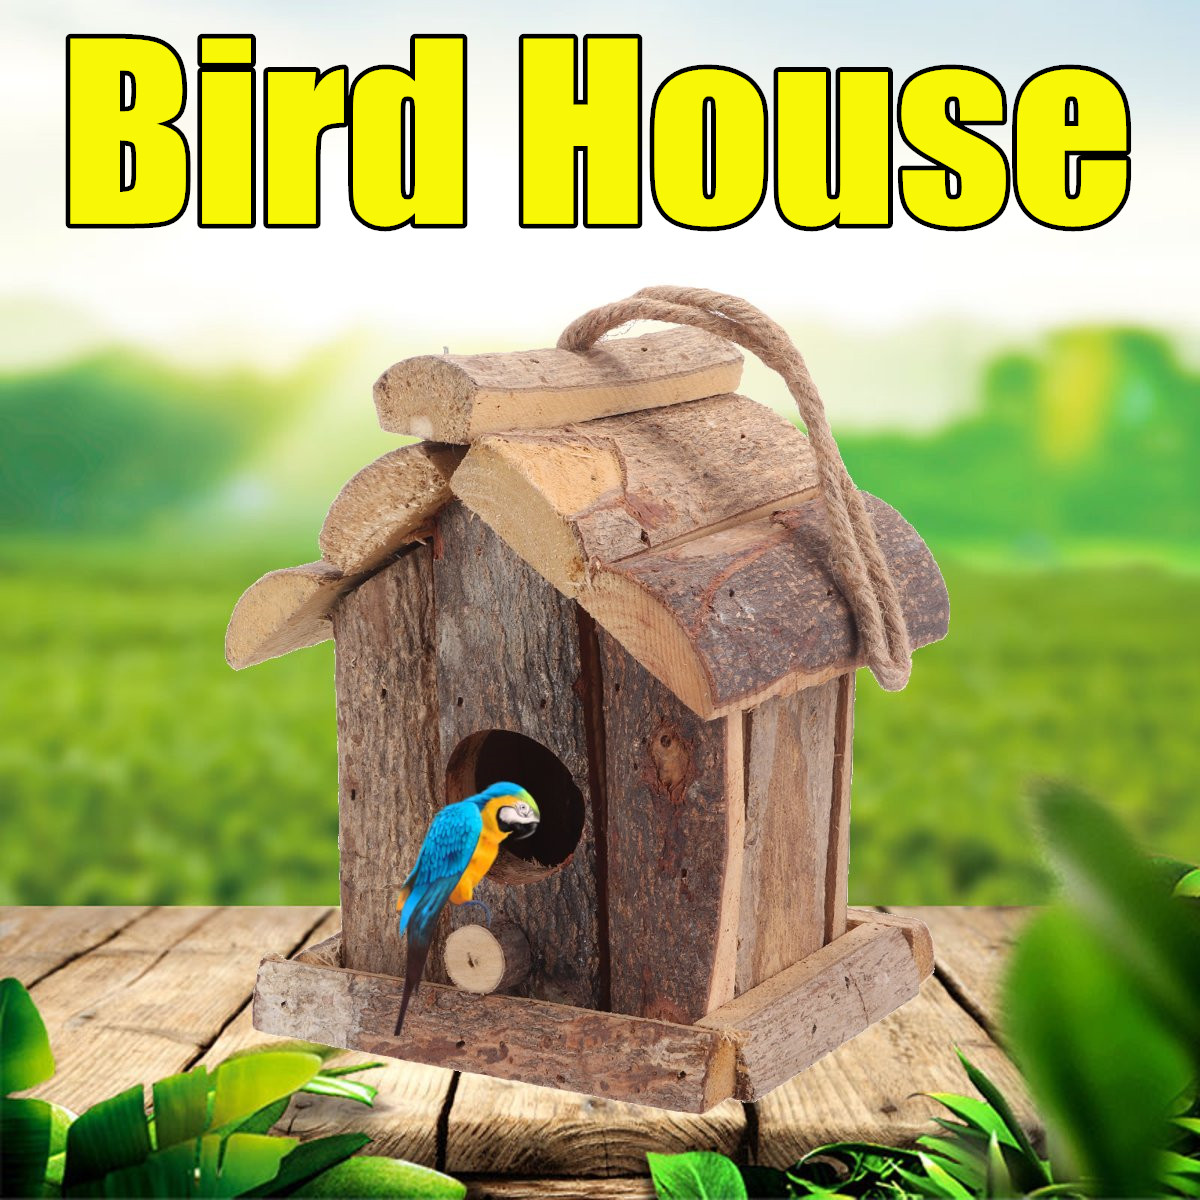 Vintage-Wooden-Bird-House-Nesting-Box-Small-Wild-Birds-Nest-Home-Garden-Decoration-1725292-1